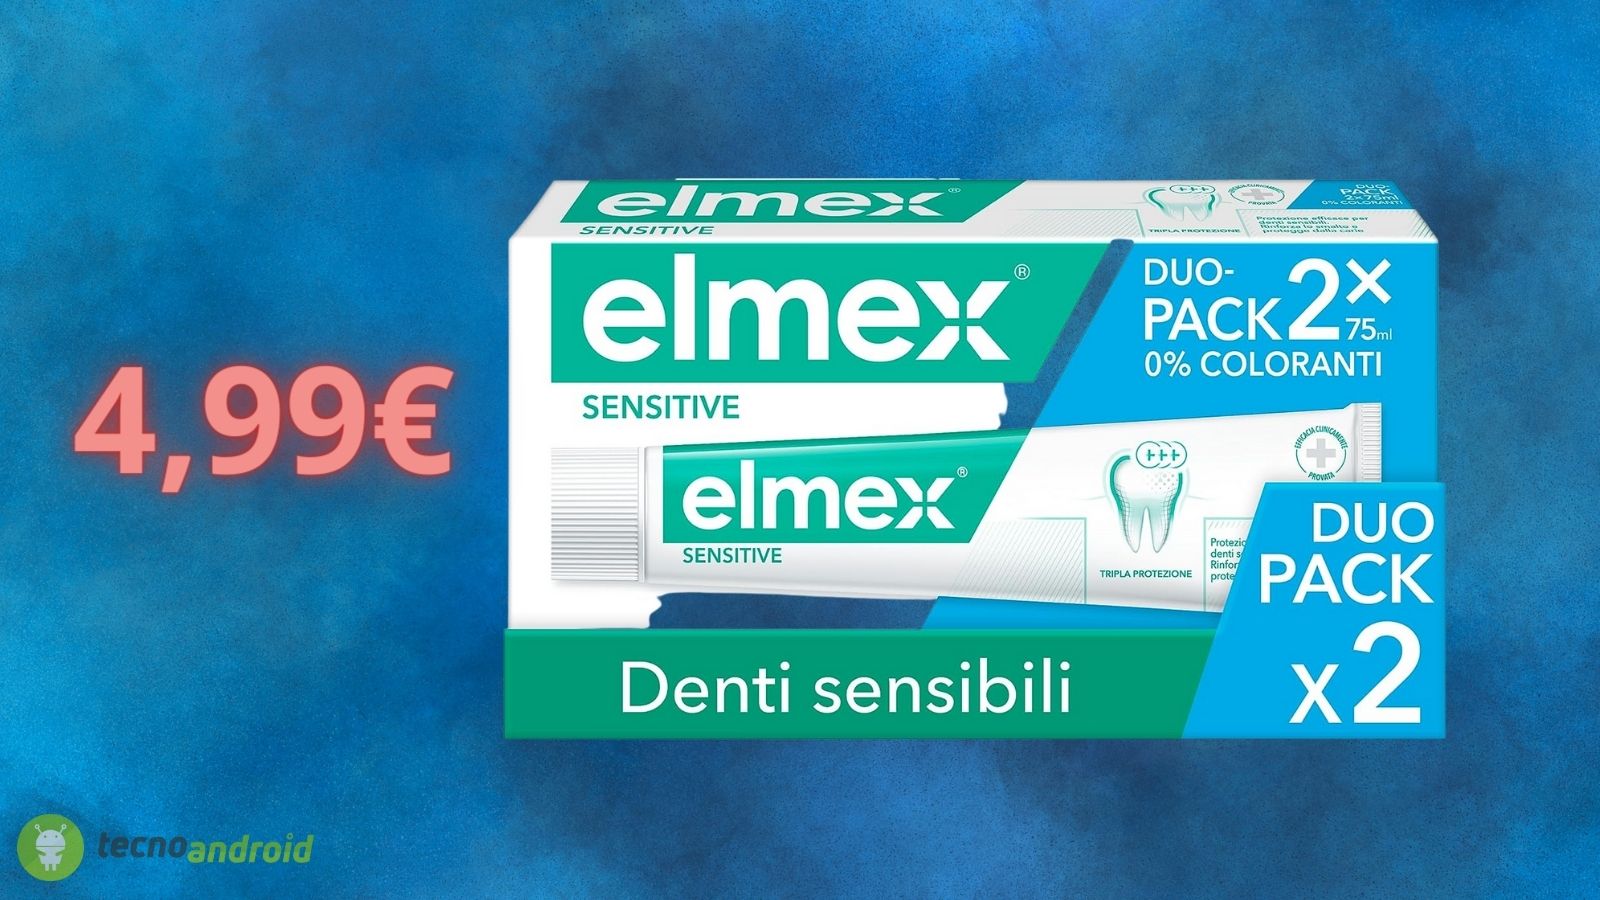 Dentifricio ELMEX in offerta 2x1 su Amazon: un AFFARE per il Black Friday